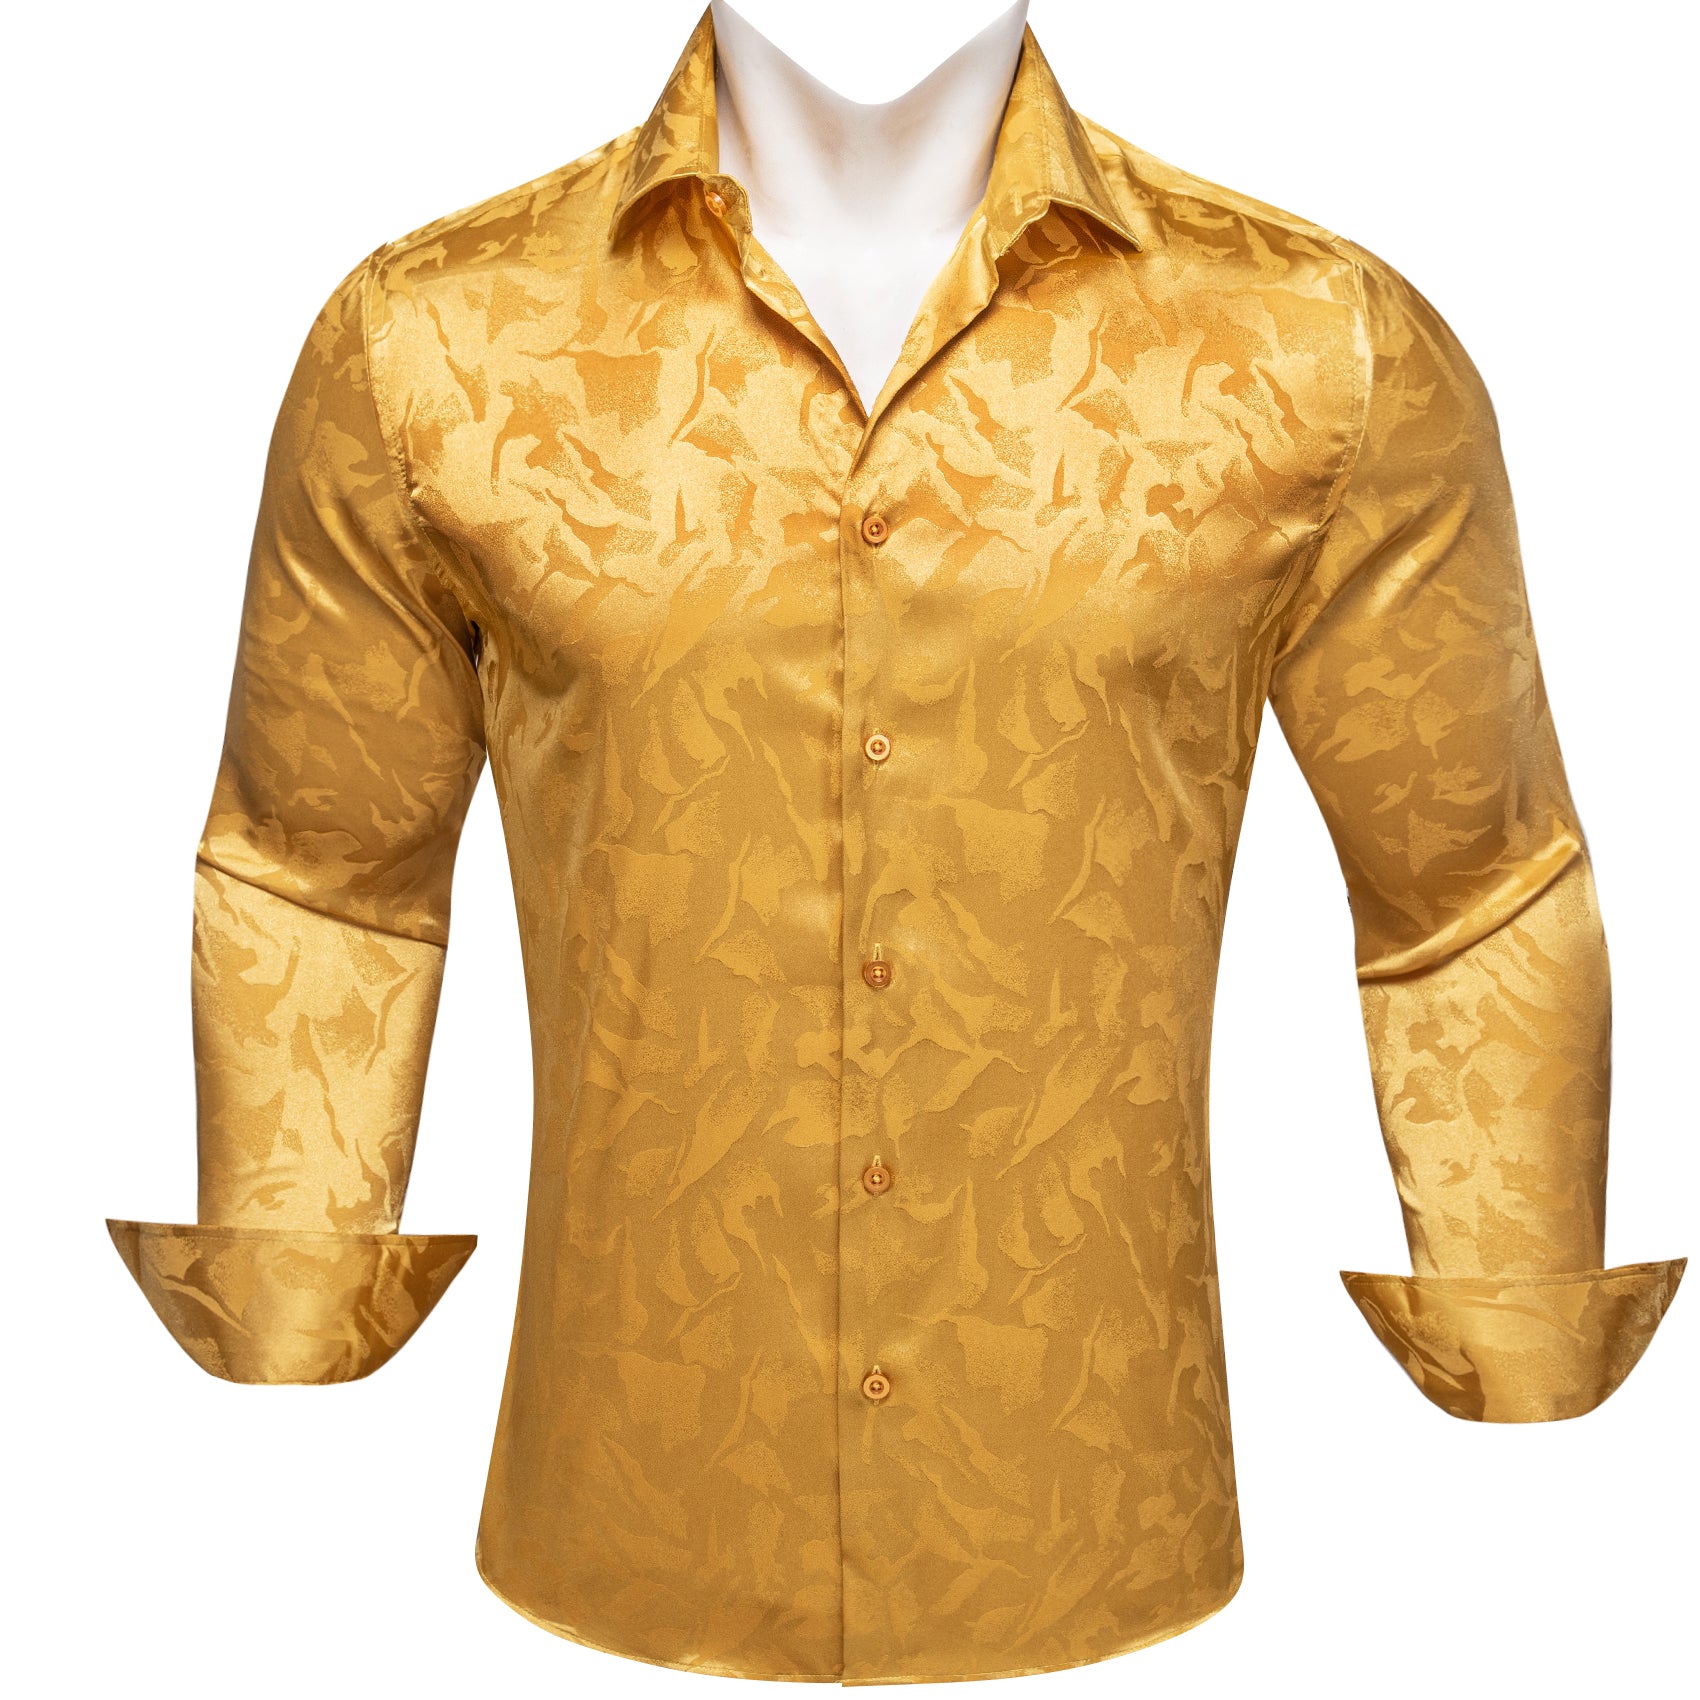 Barry.wang Amber Floral Silk Men's Shirt